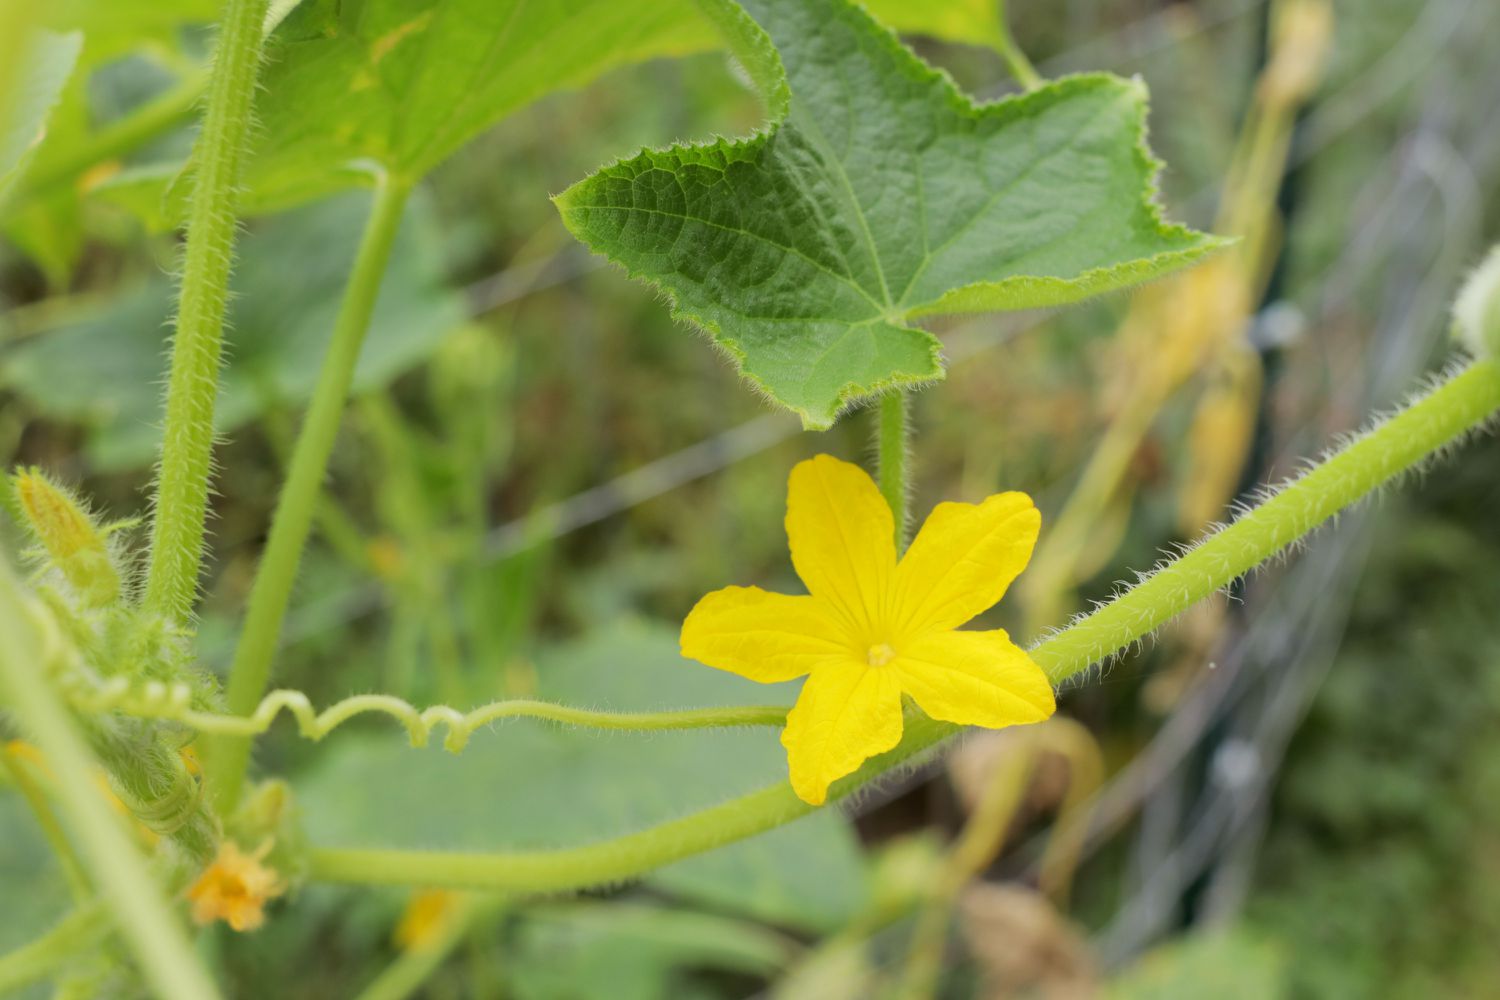 Planta de pepino limón enredadera con pequeña flor amarilla y hoja primer plano